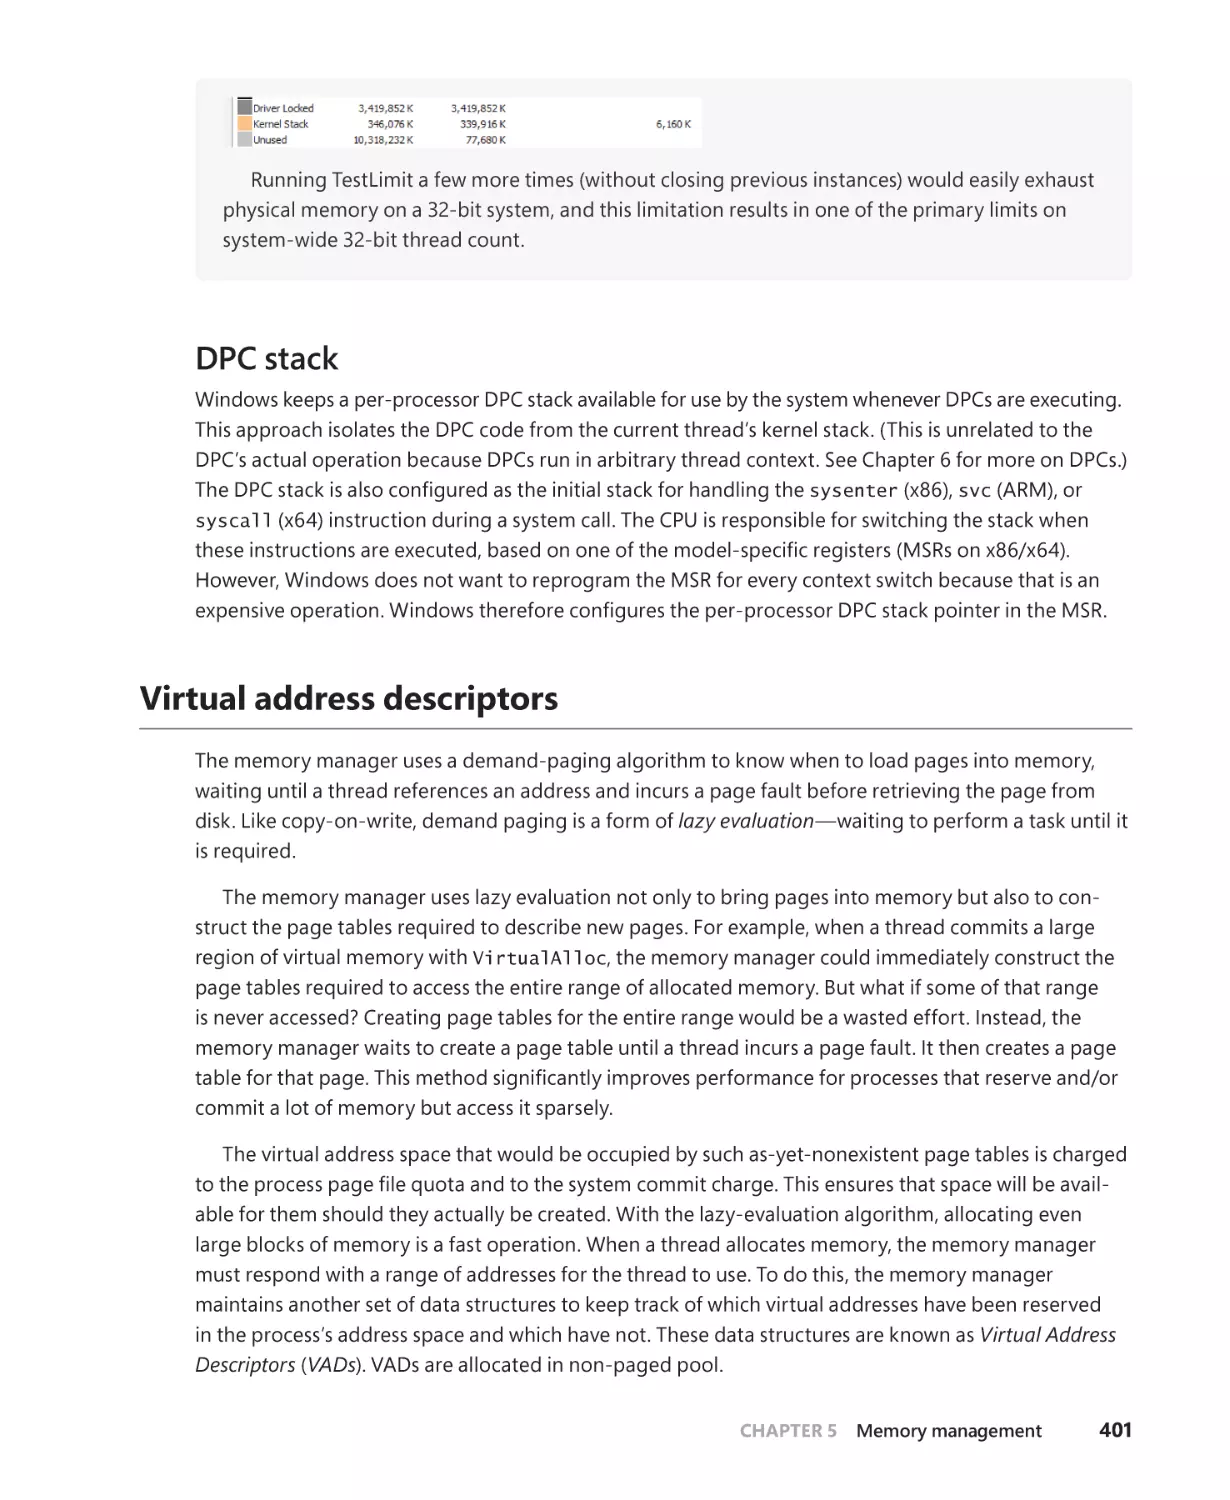 DPC stack
Virtual address descriptors